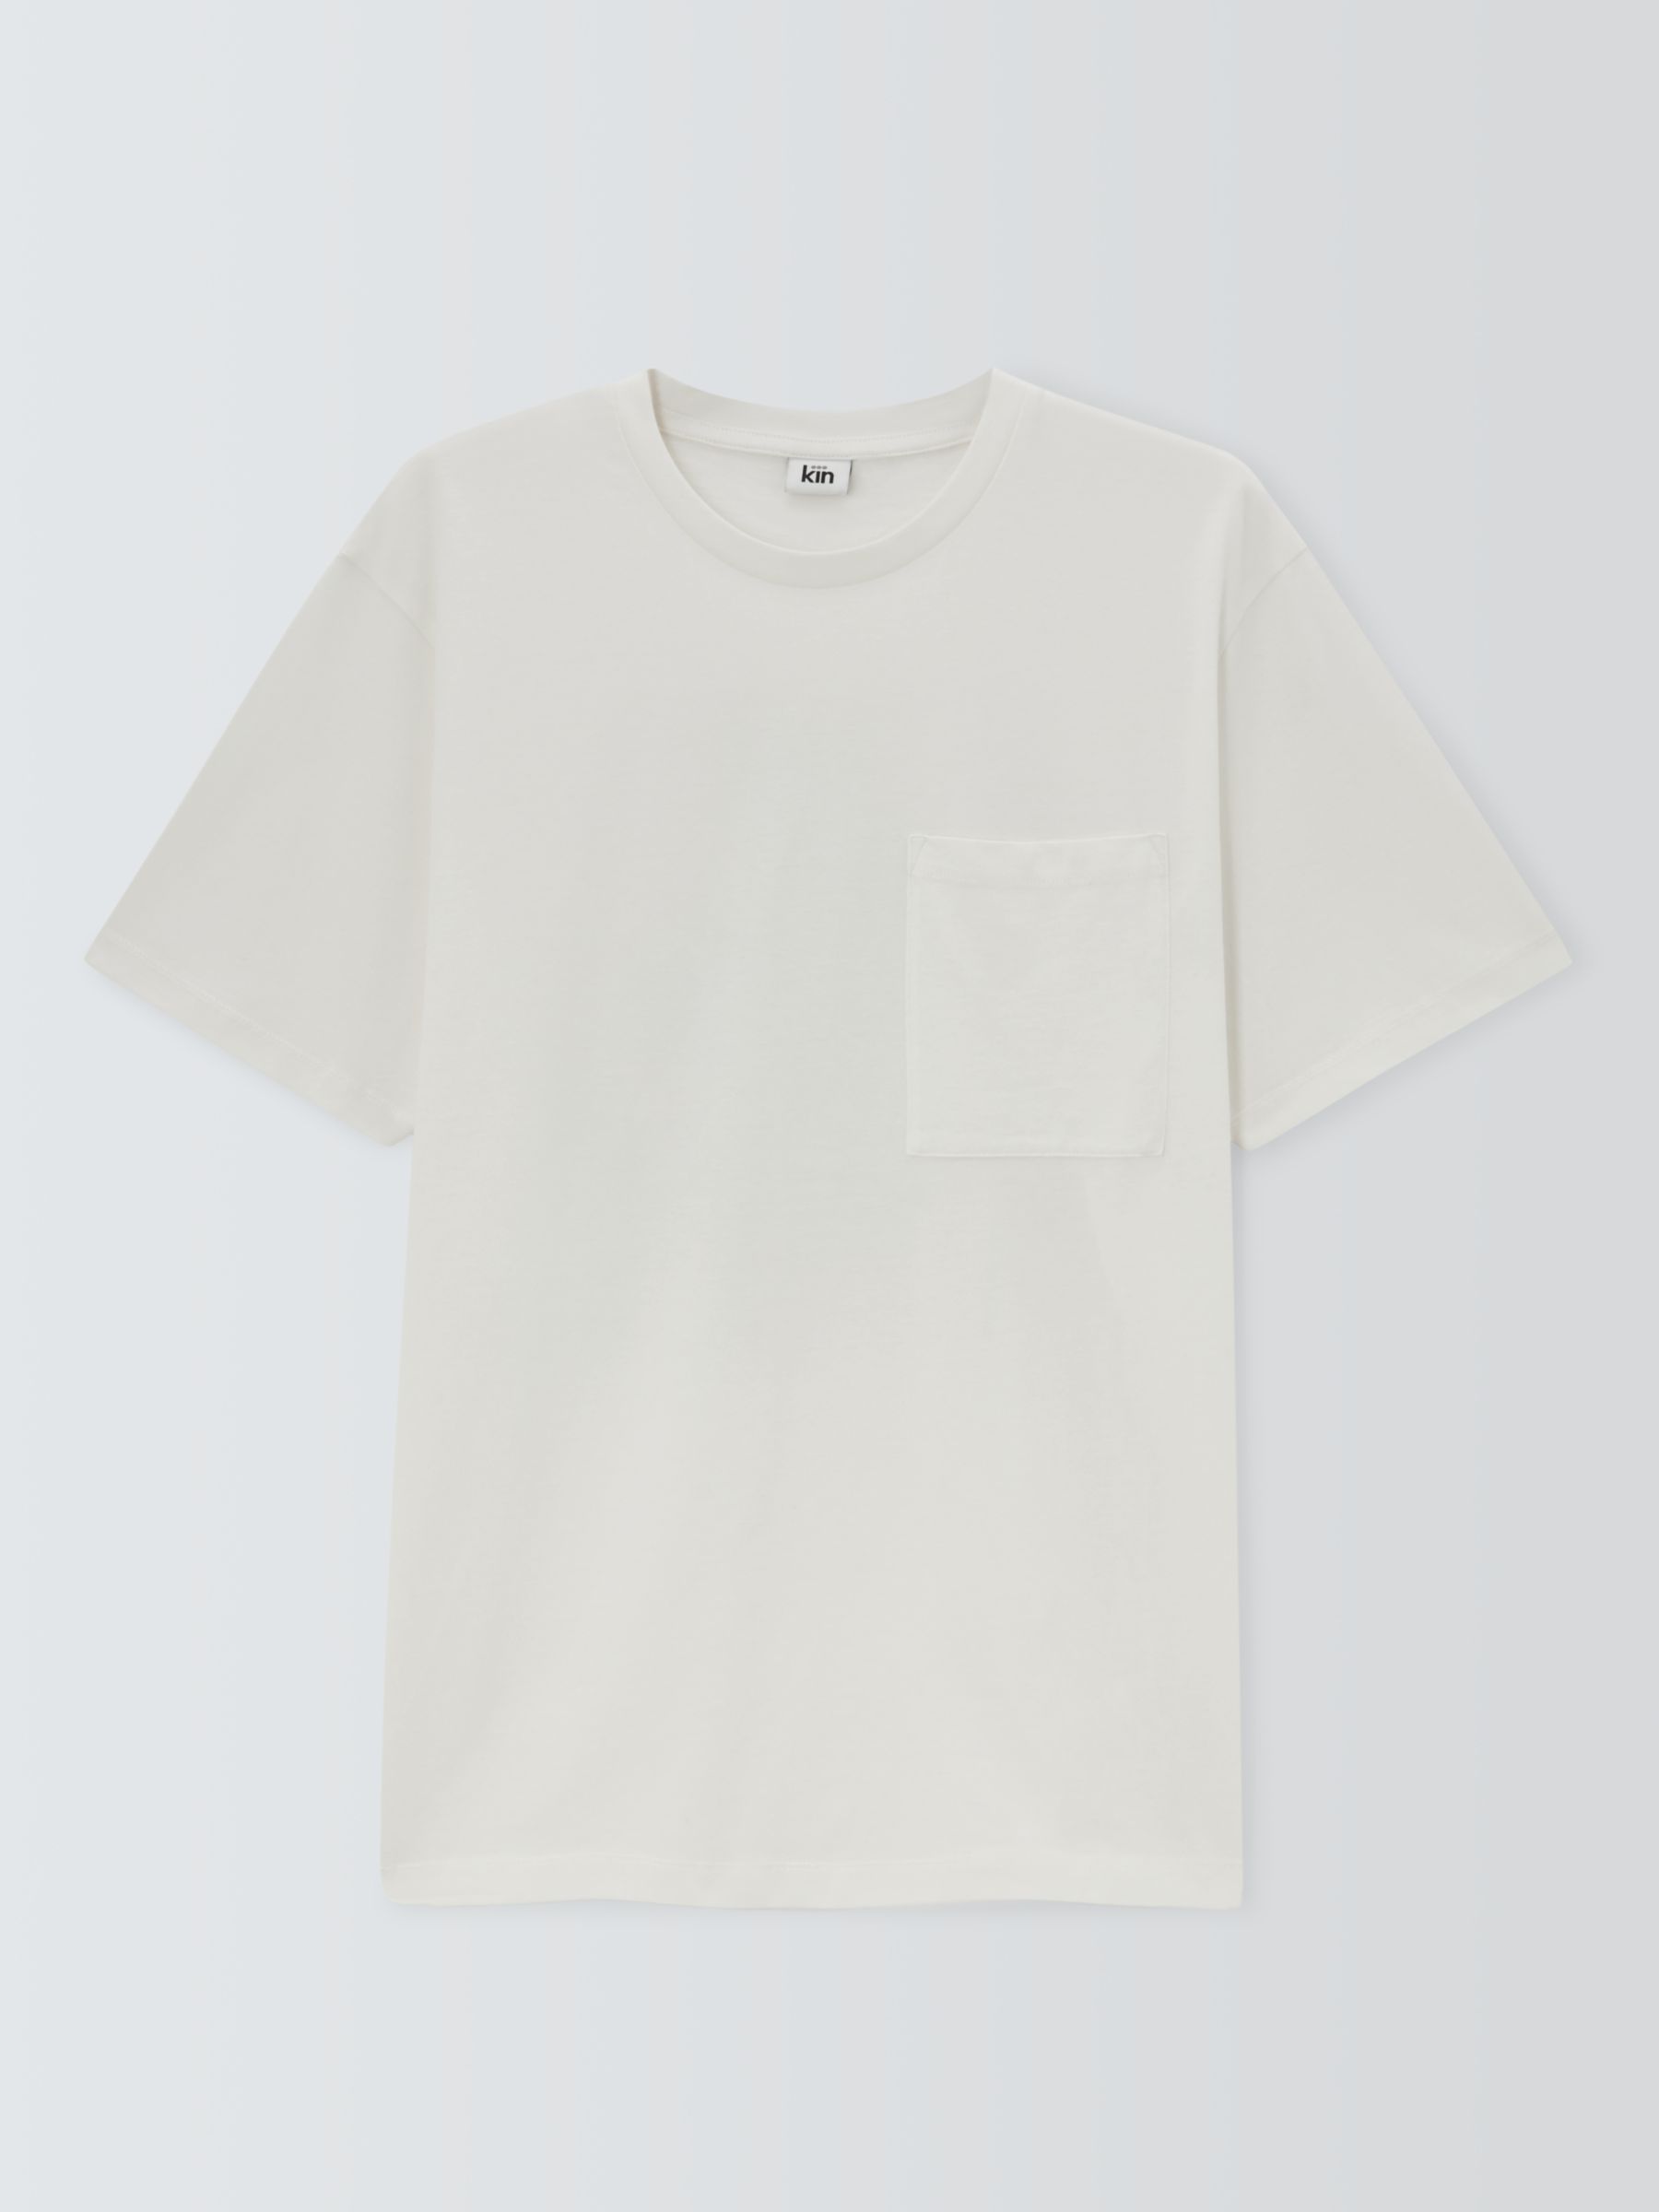 Kin Pocket Short Sleeve Graphic Cotton T-Shirt, Cloud Dancer, XXL